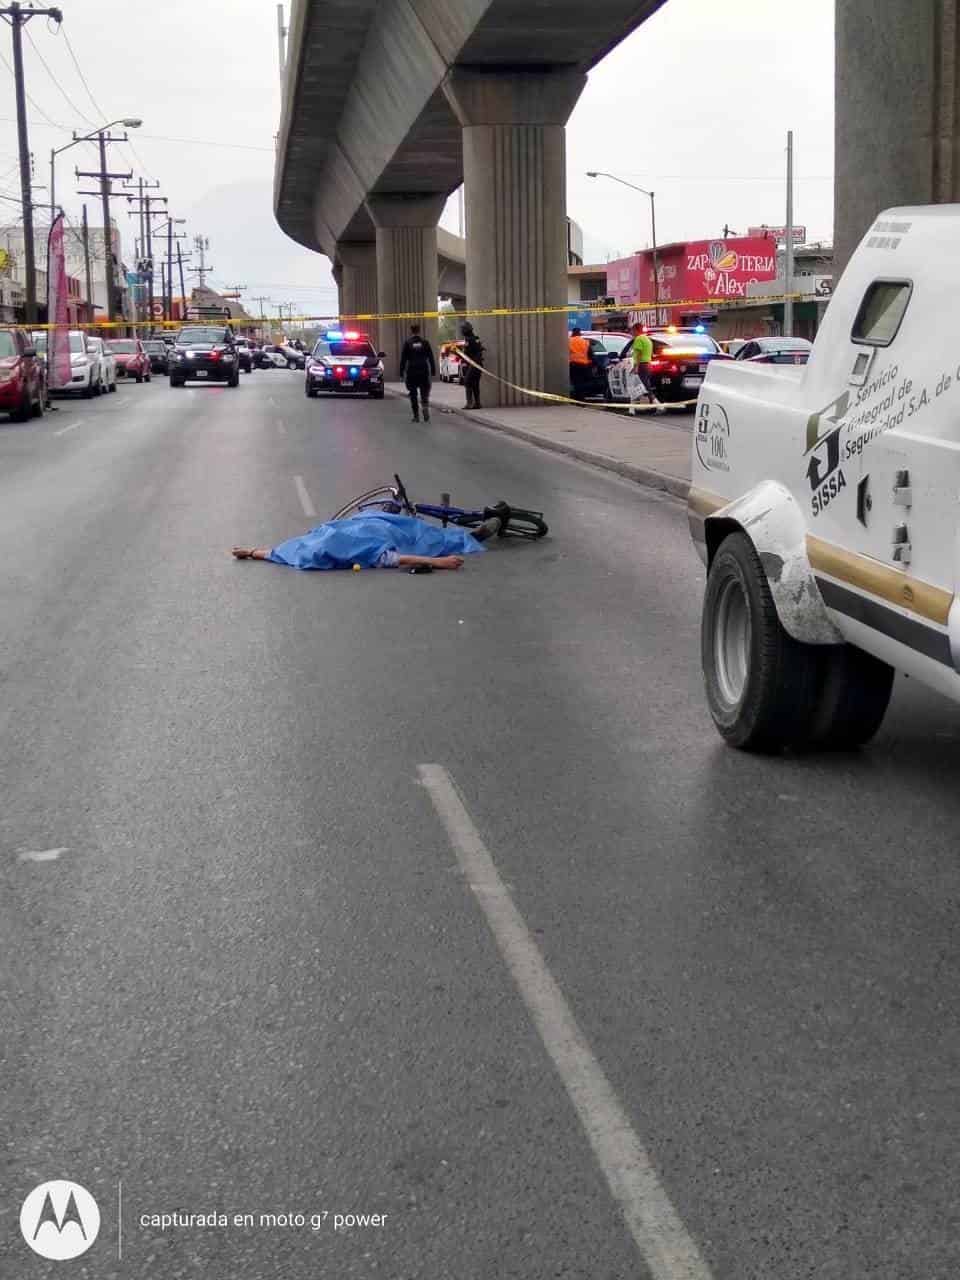 La camioneta de valores atropelló al ciclista y lo arrastró varios metros